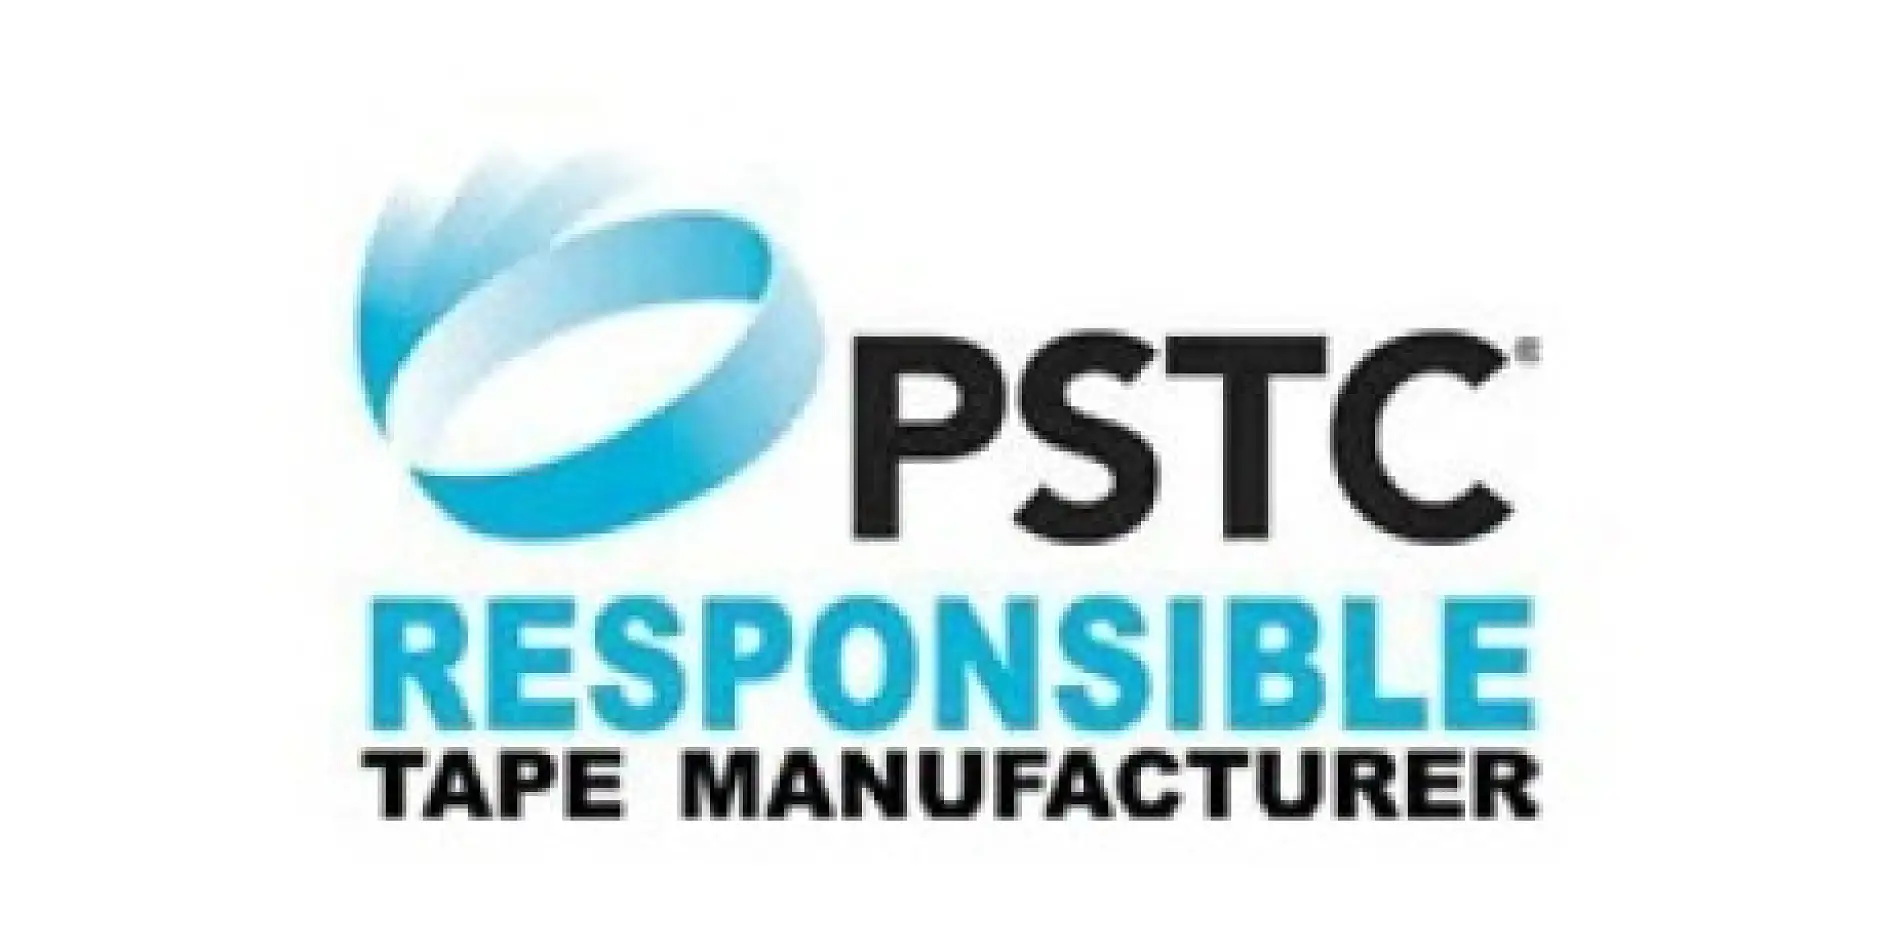 Hội đồng Băng Nhạy áp lực (PSTC) là một tổ chức thương mại Bắc Mỹ phi lợi nhuận, có 60 năm hoạt động dành cho các nhà sản xuất băng keo và các nhà cung ứng thành viên. Tổ chức này chuyên giúp ngành băng keo sản xuất các sản phẩm băng keo nhạy áp lực có chất lượng trên phạm vi toàn cầu.